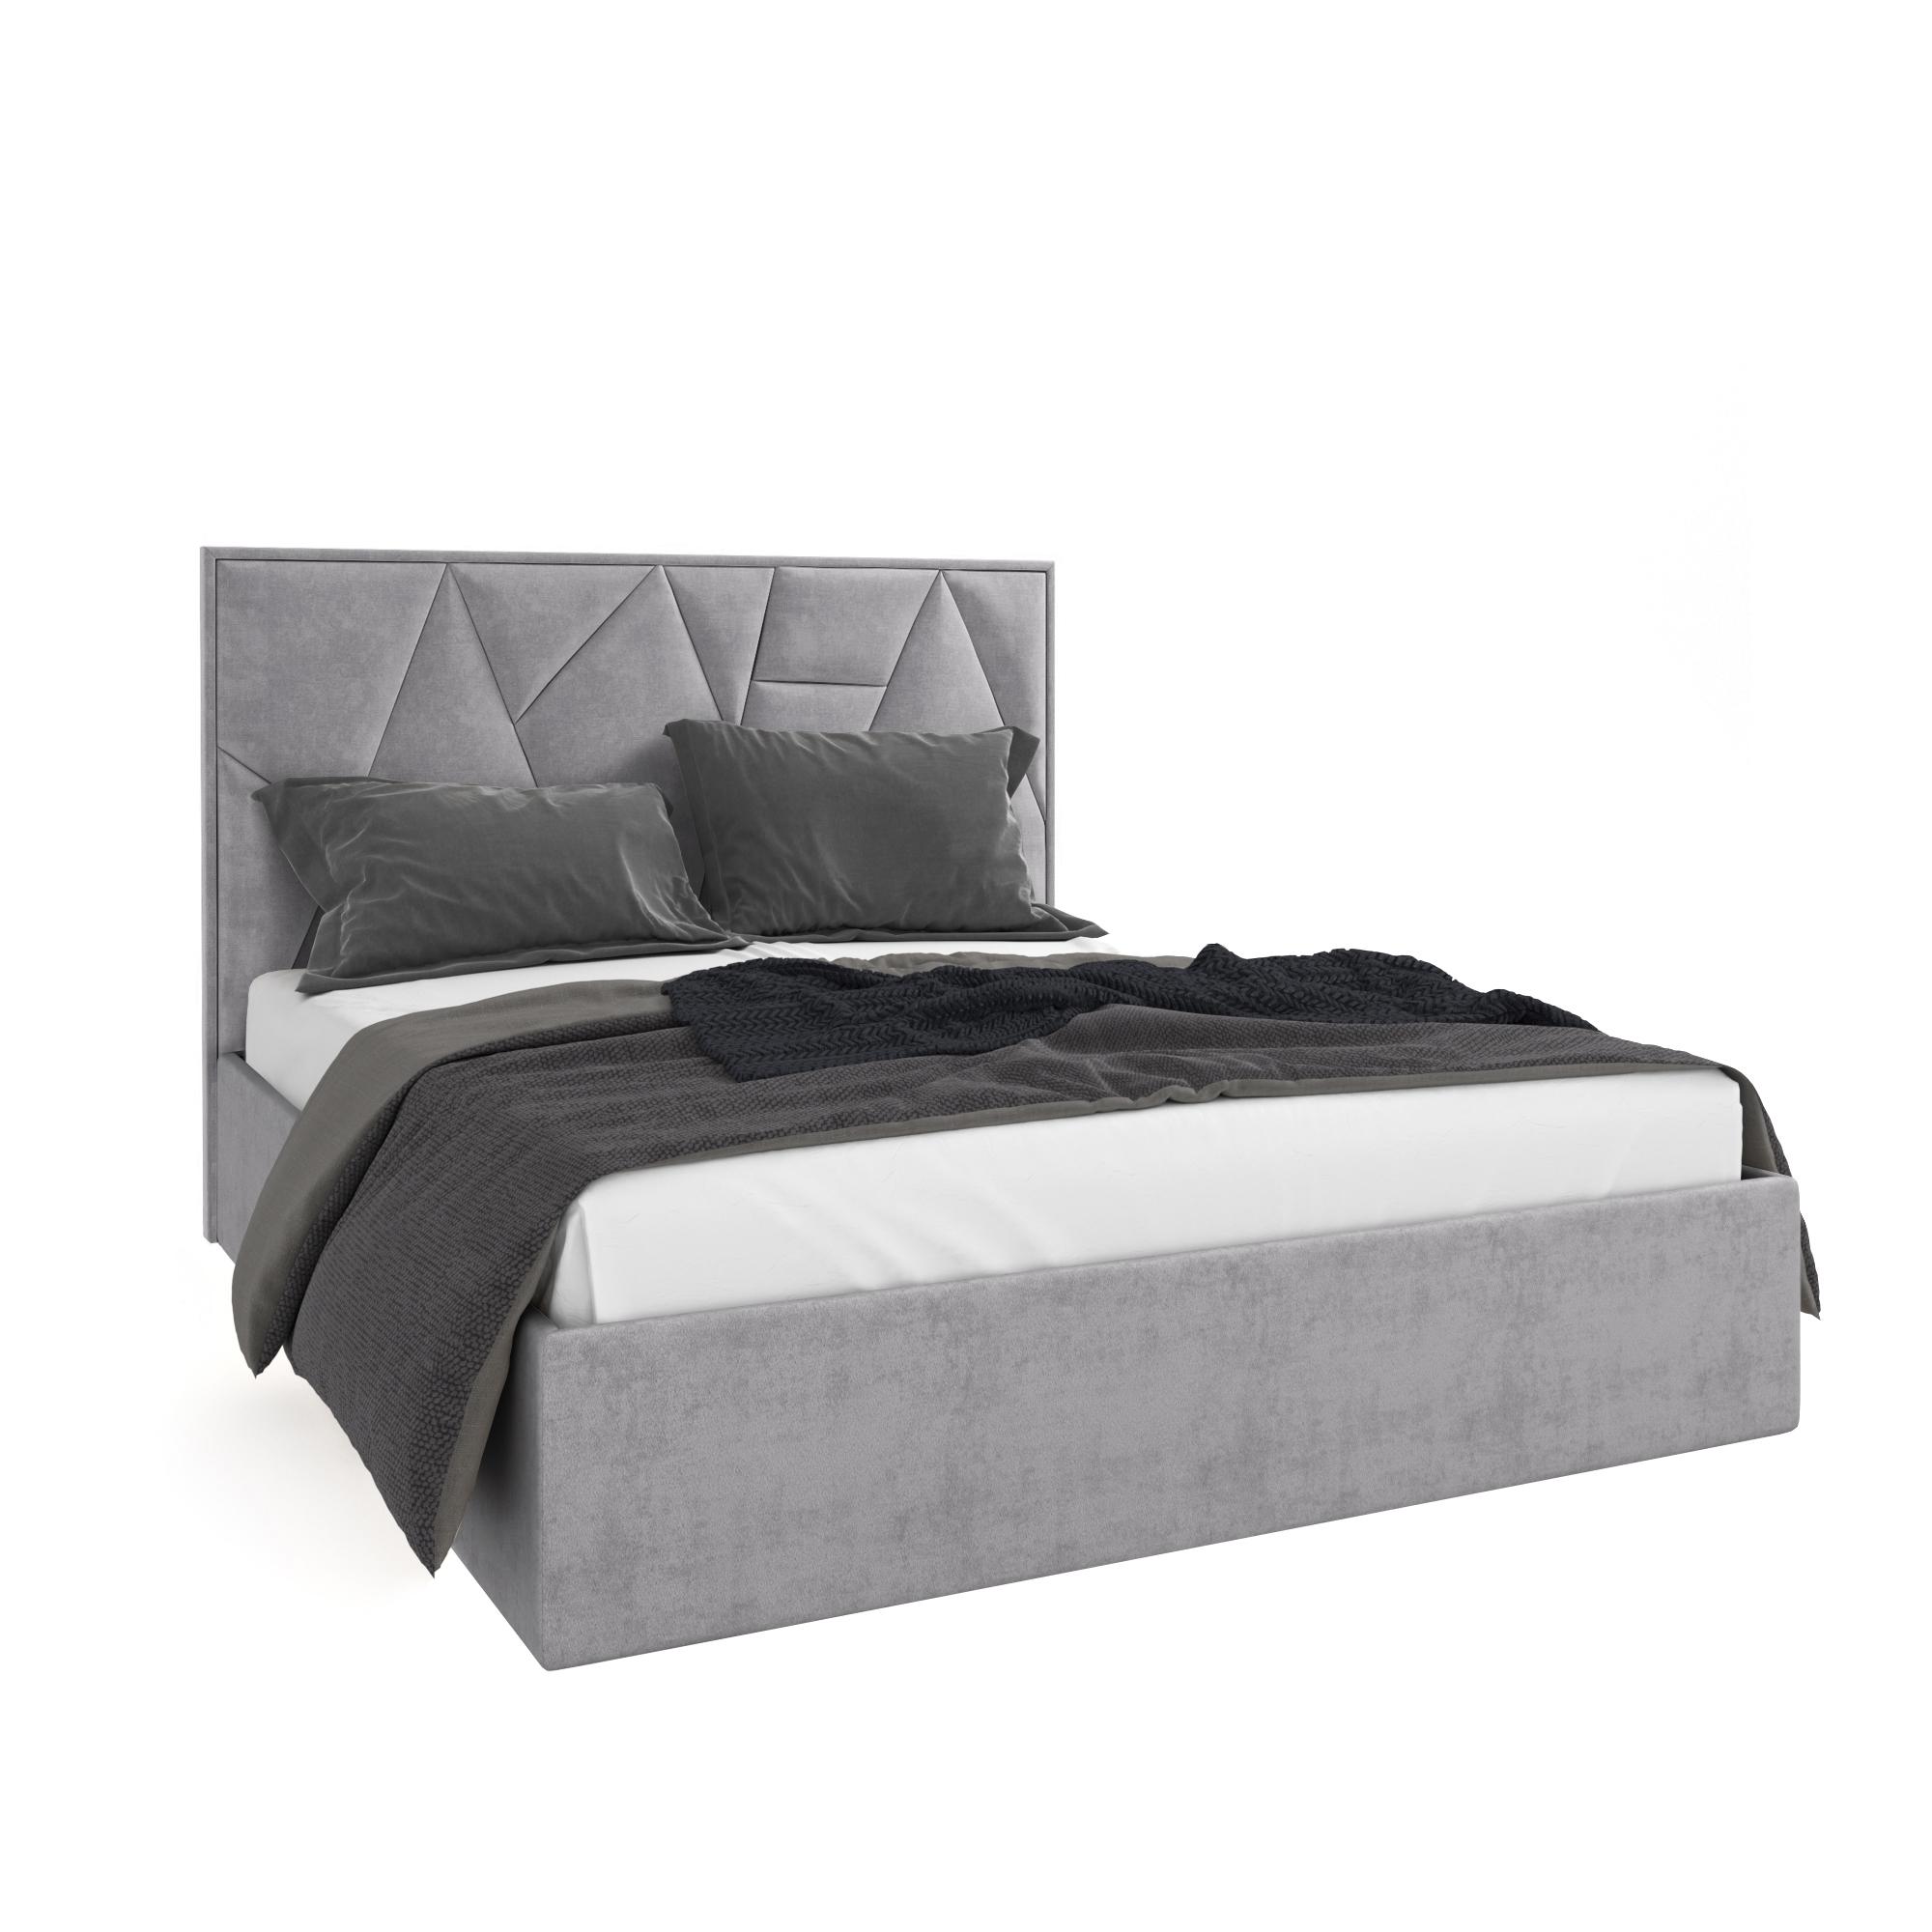 Кровать Липси серый 90х200 изображение товара